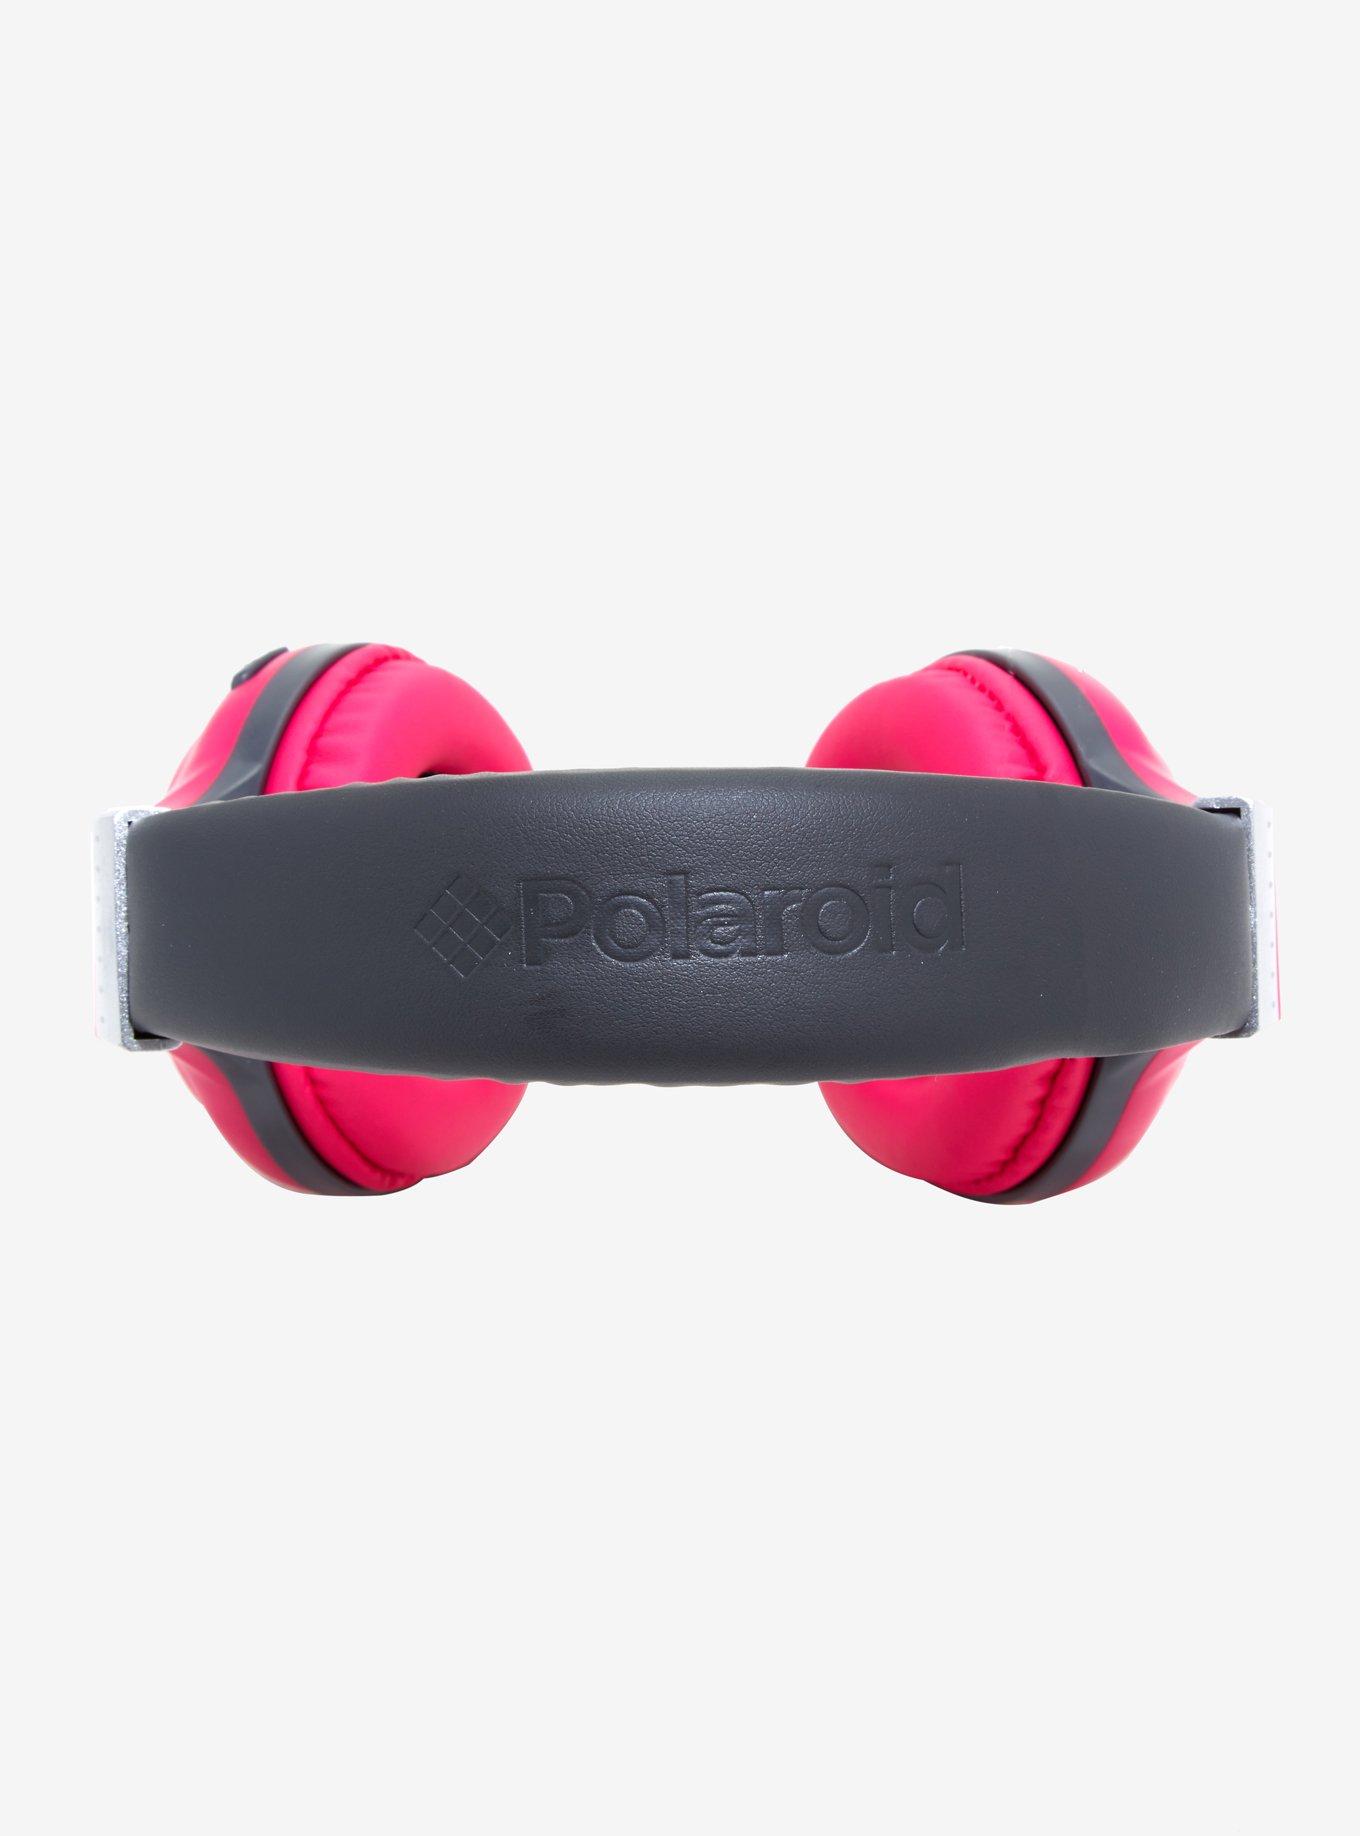 Polaroid Pink Bluetooth Headphones, , alternate